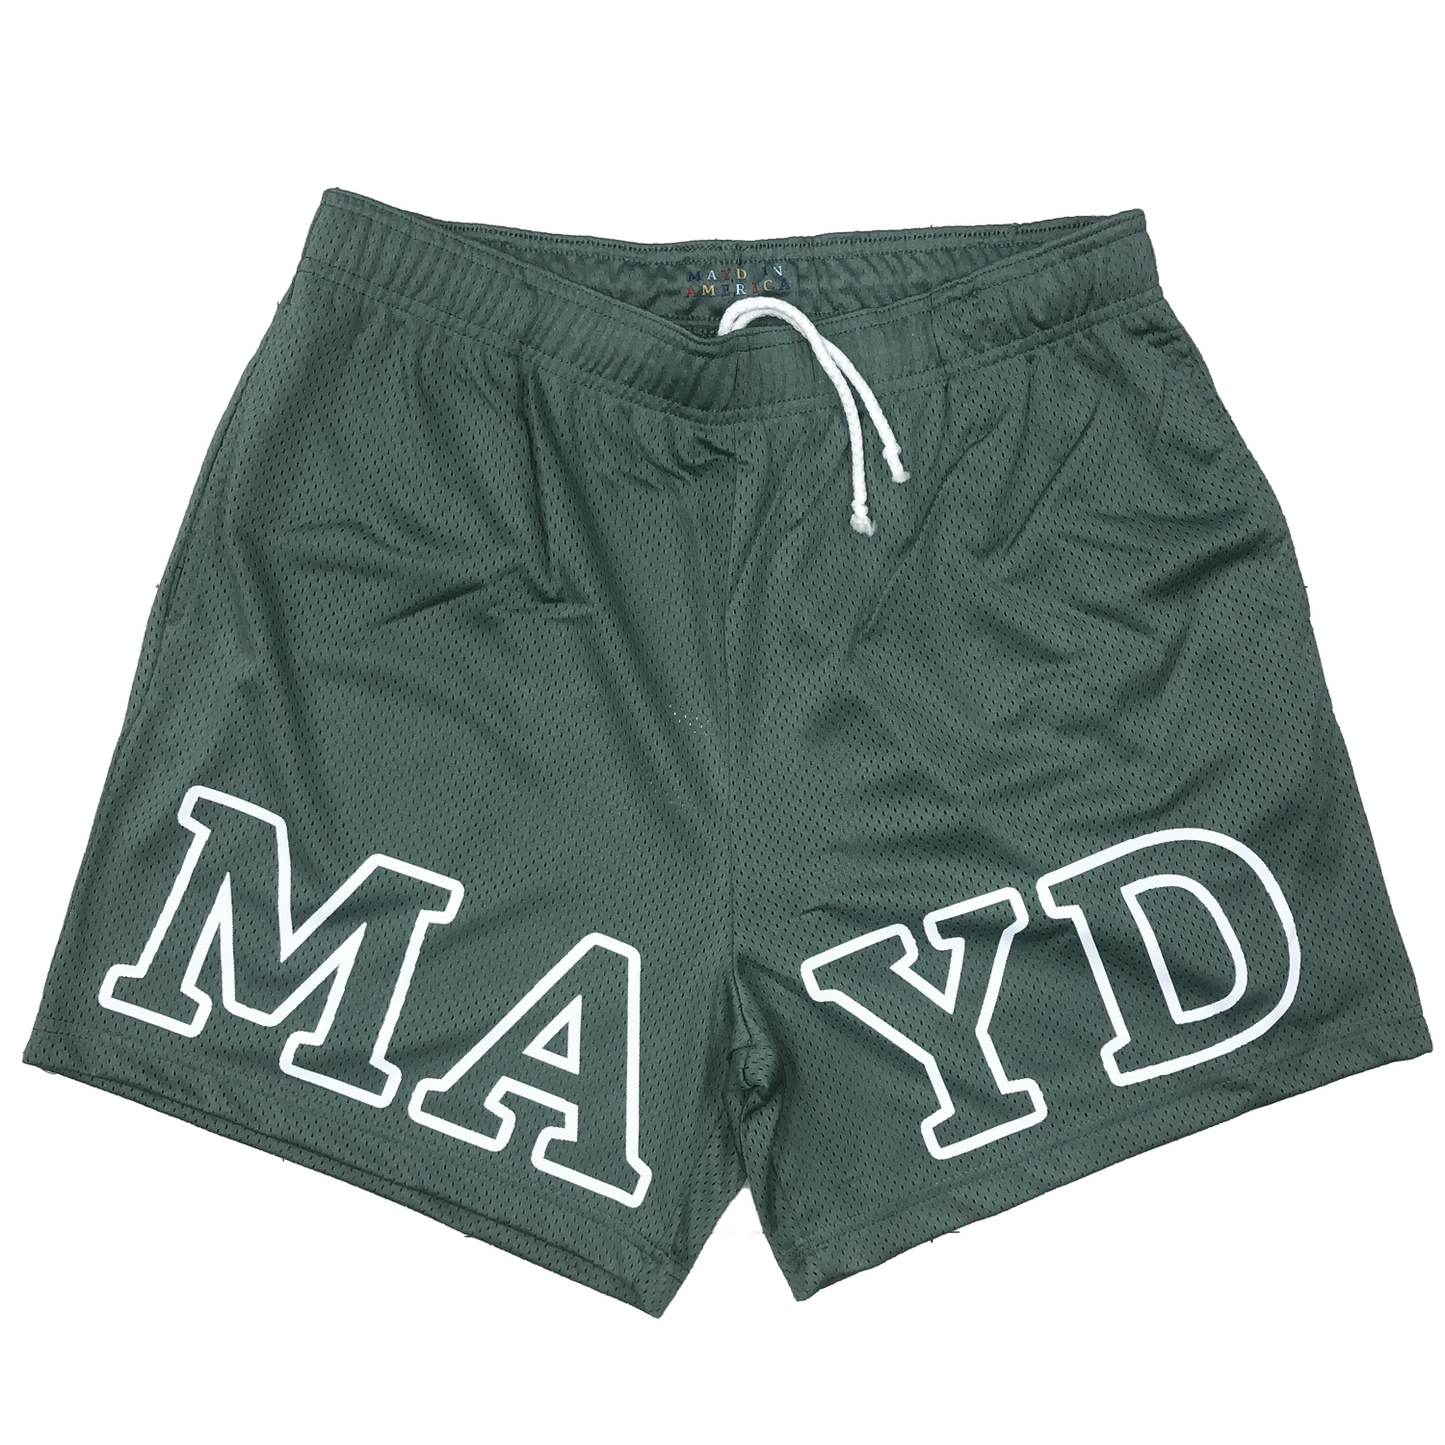 MAYD Mesh Shorts